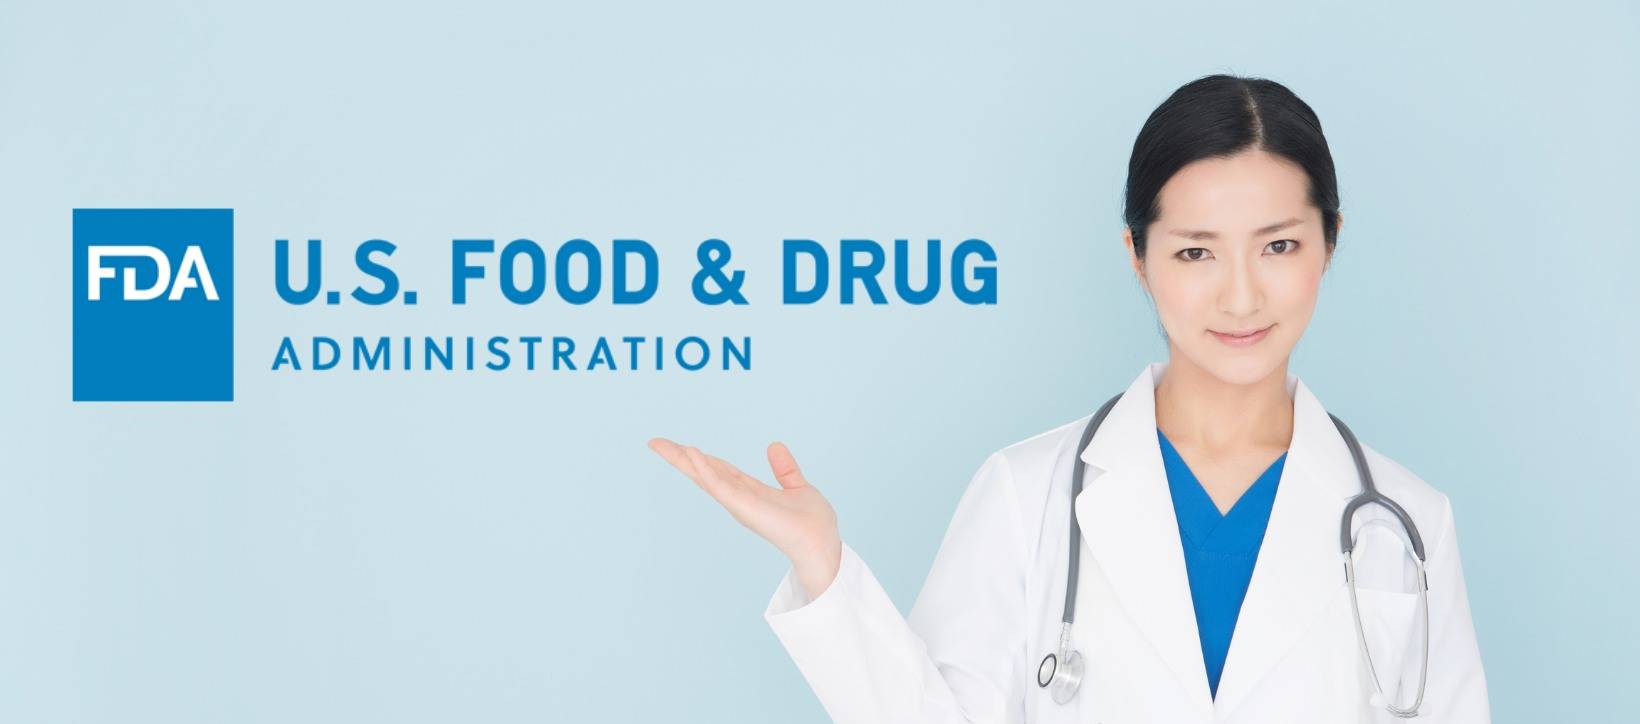 Projet de lignes directrices de la FDA sur les preuves du monde réel : aspects spécifiques | FDA